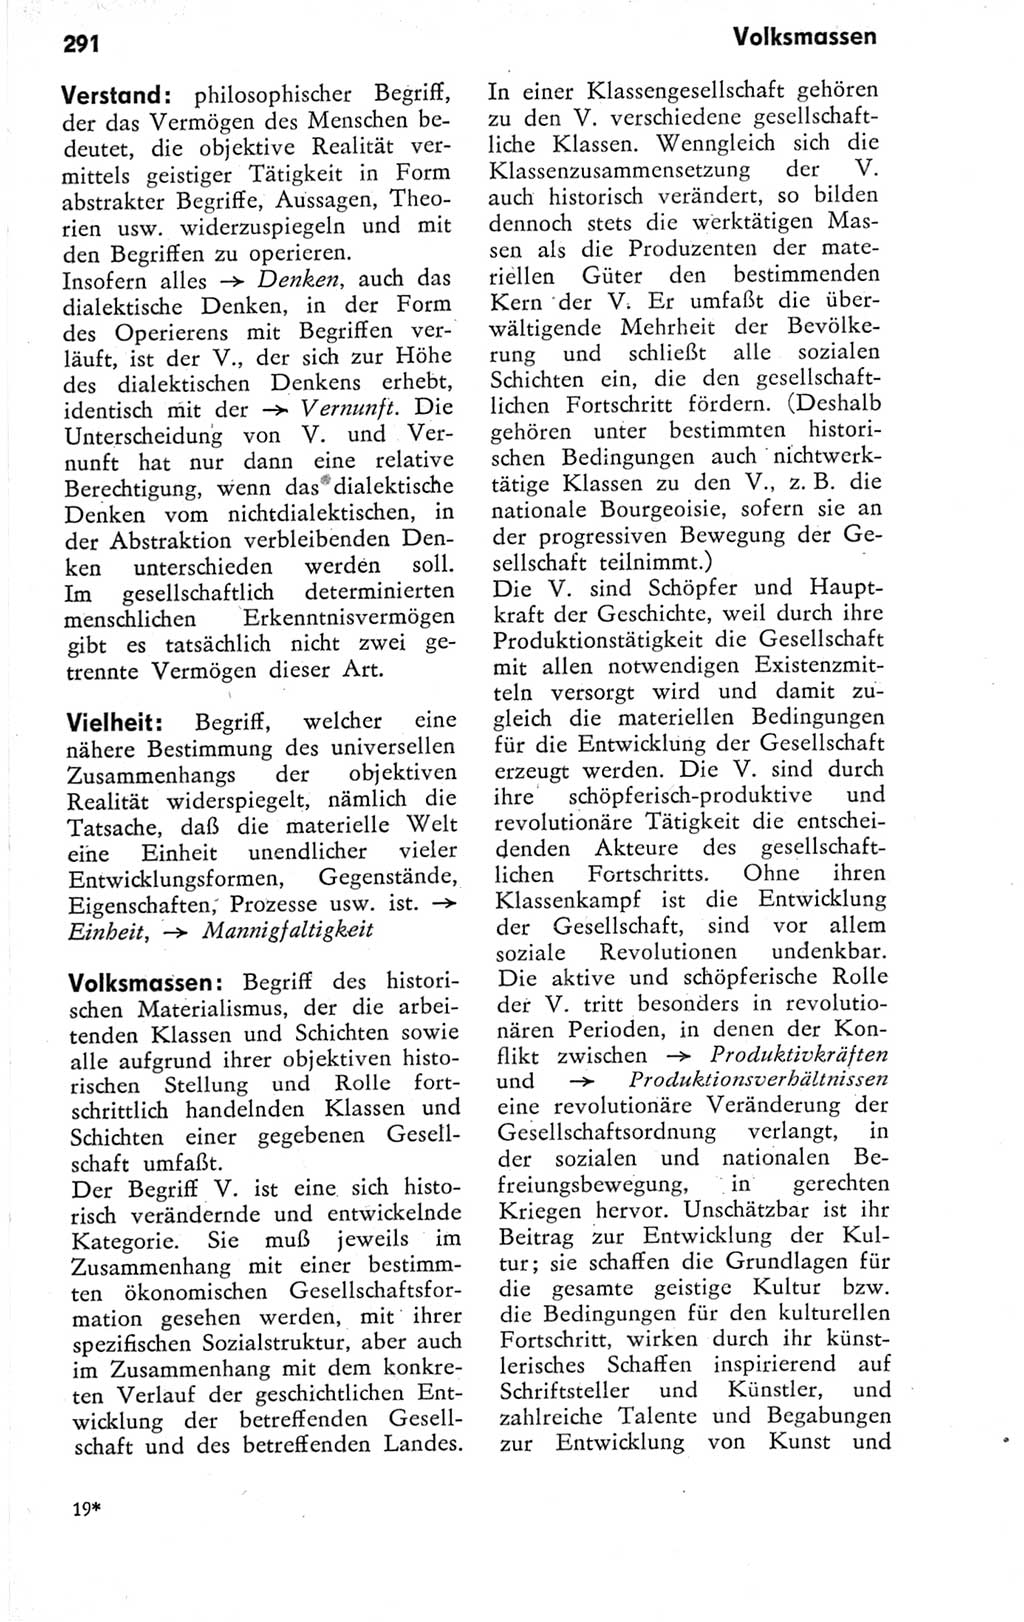 Kleines Wörterbuch der marxistisch-leninistischen Philosophie [Deutsche Demokratische Republik (DDR)] 1974, Seite 291 (Kl. Wb. ML Phil. DDR 1974, S. 291)